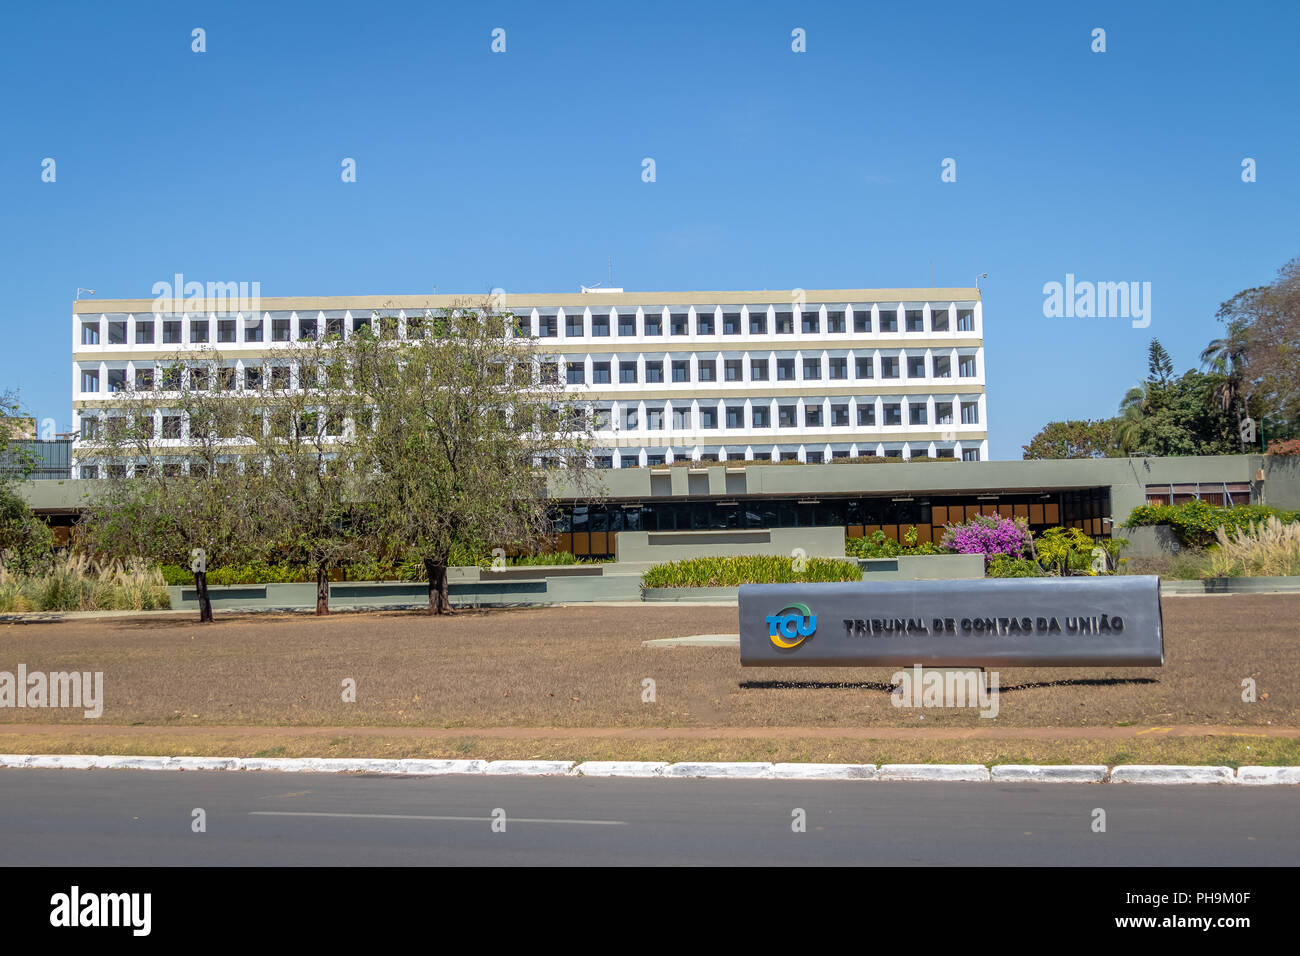 Bundesgerichtshof der Konten der Brasilianischen Accountability Office (Tribunal de Contas da uniao-TCU) - Brasilia, Brasilien Stockfoto